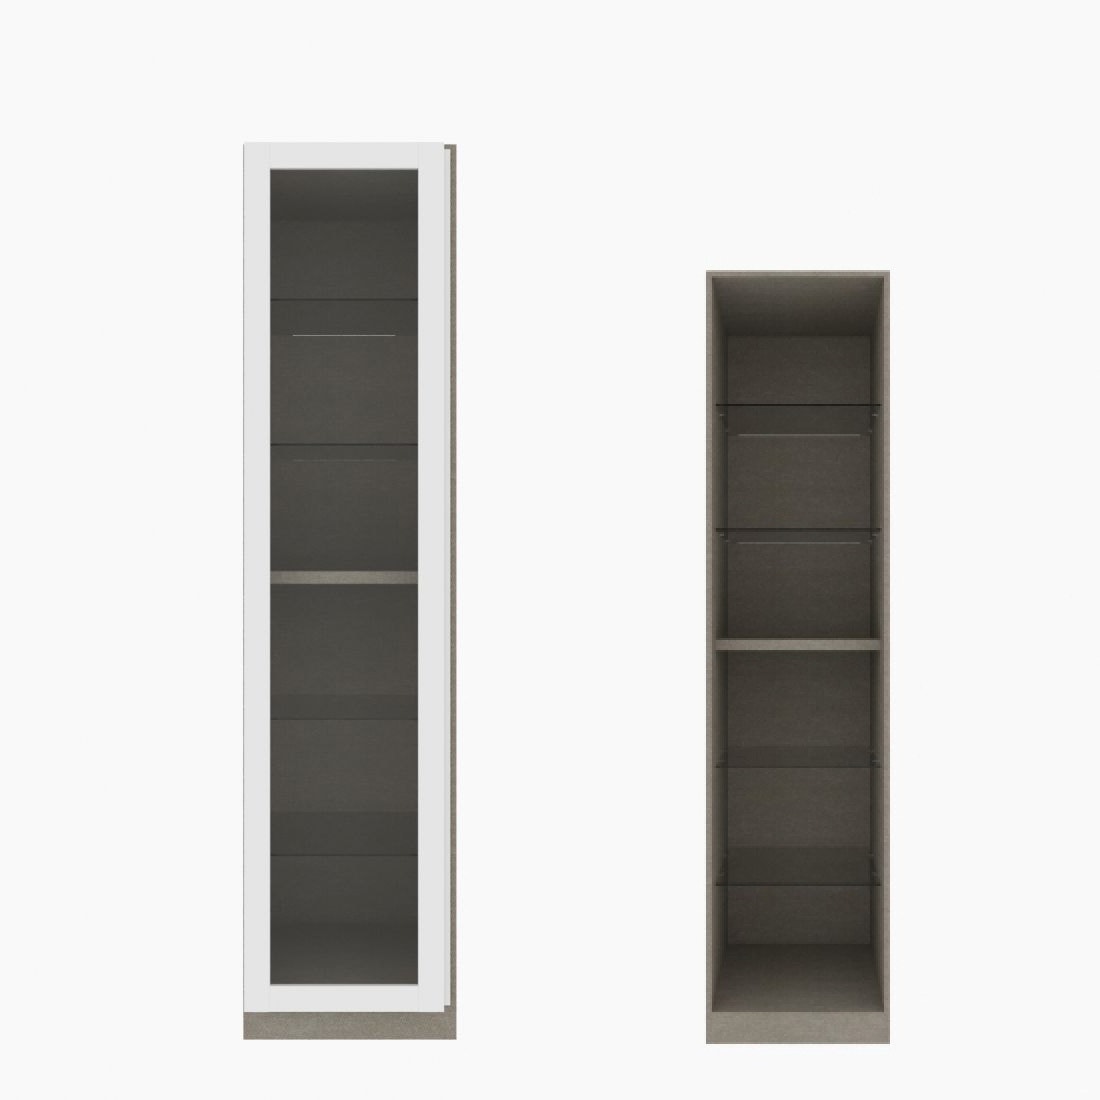 ตู้เสื้อผ้า ตู้โชว์ชั้นกระจก OP-H (หน้าบานเปิดซ้าย) ขนาด 50 ซม. รุ่น Blox สีขาว&กระจกใส01